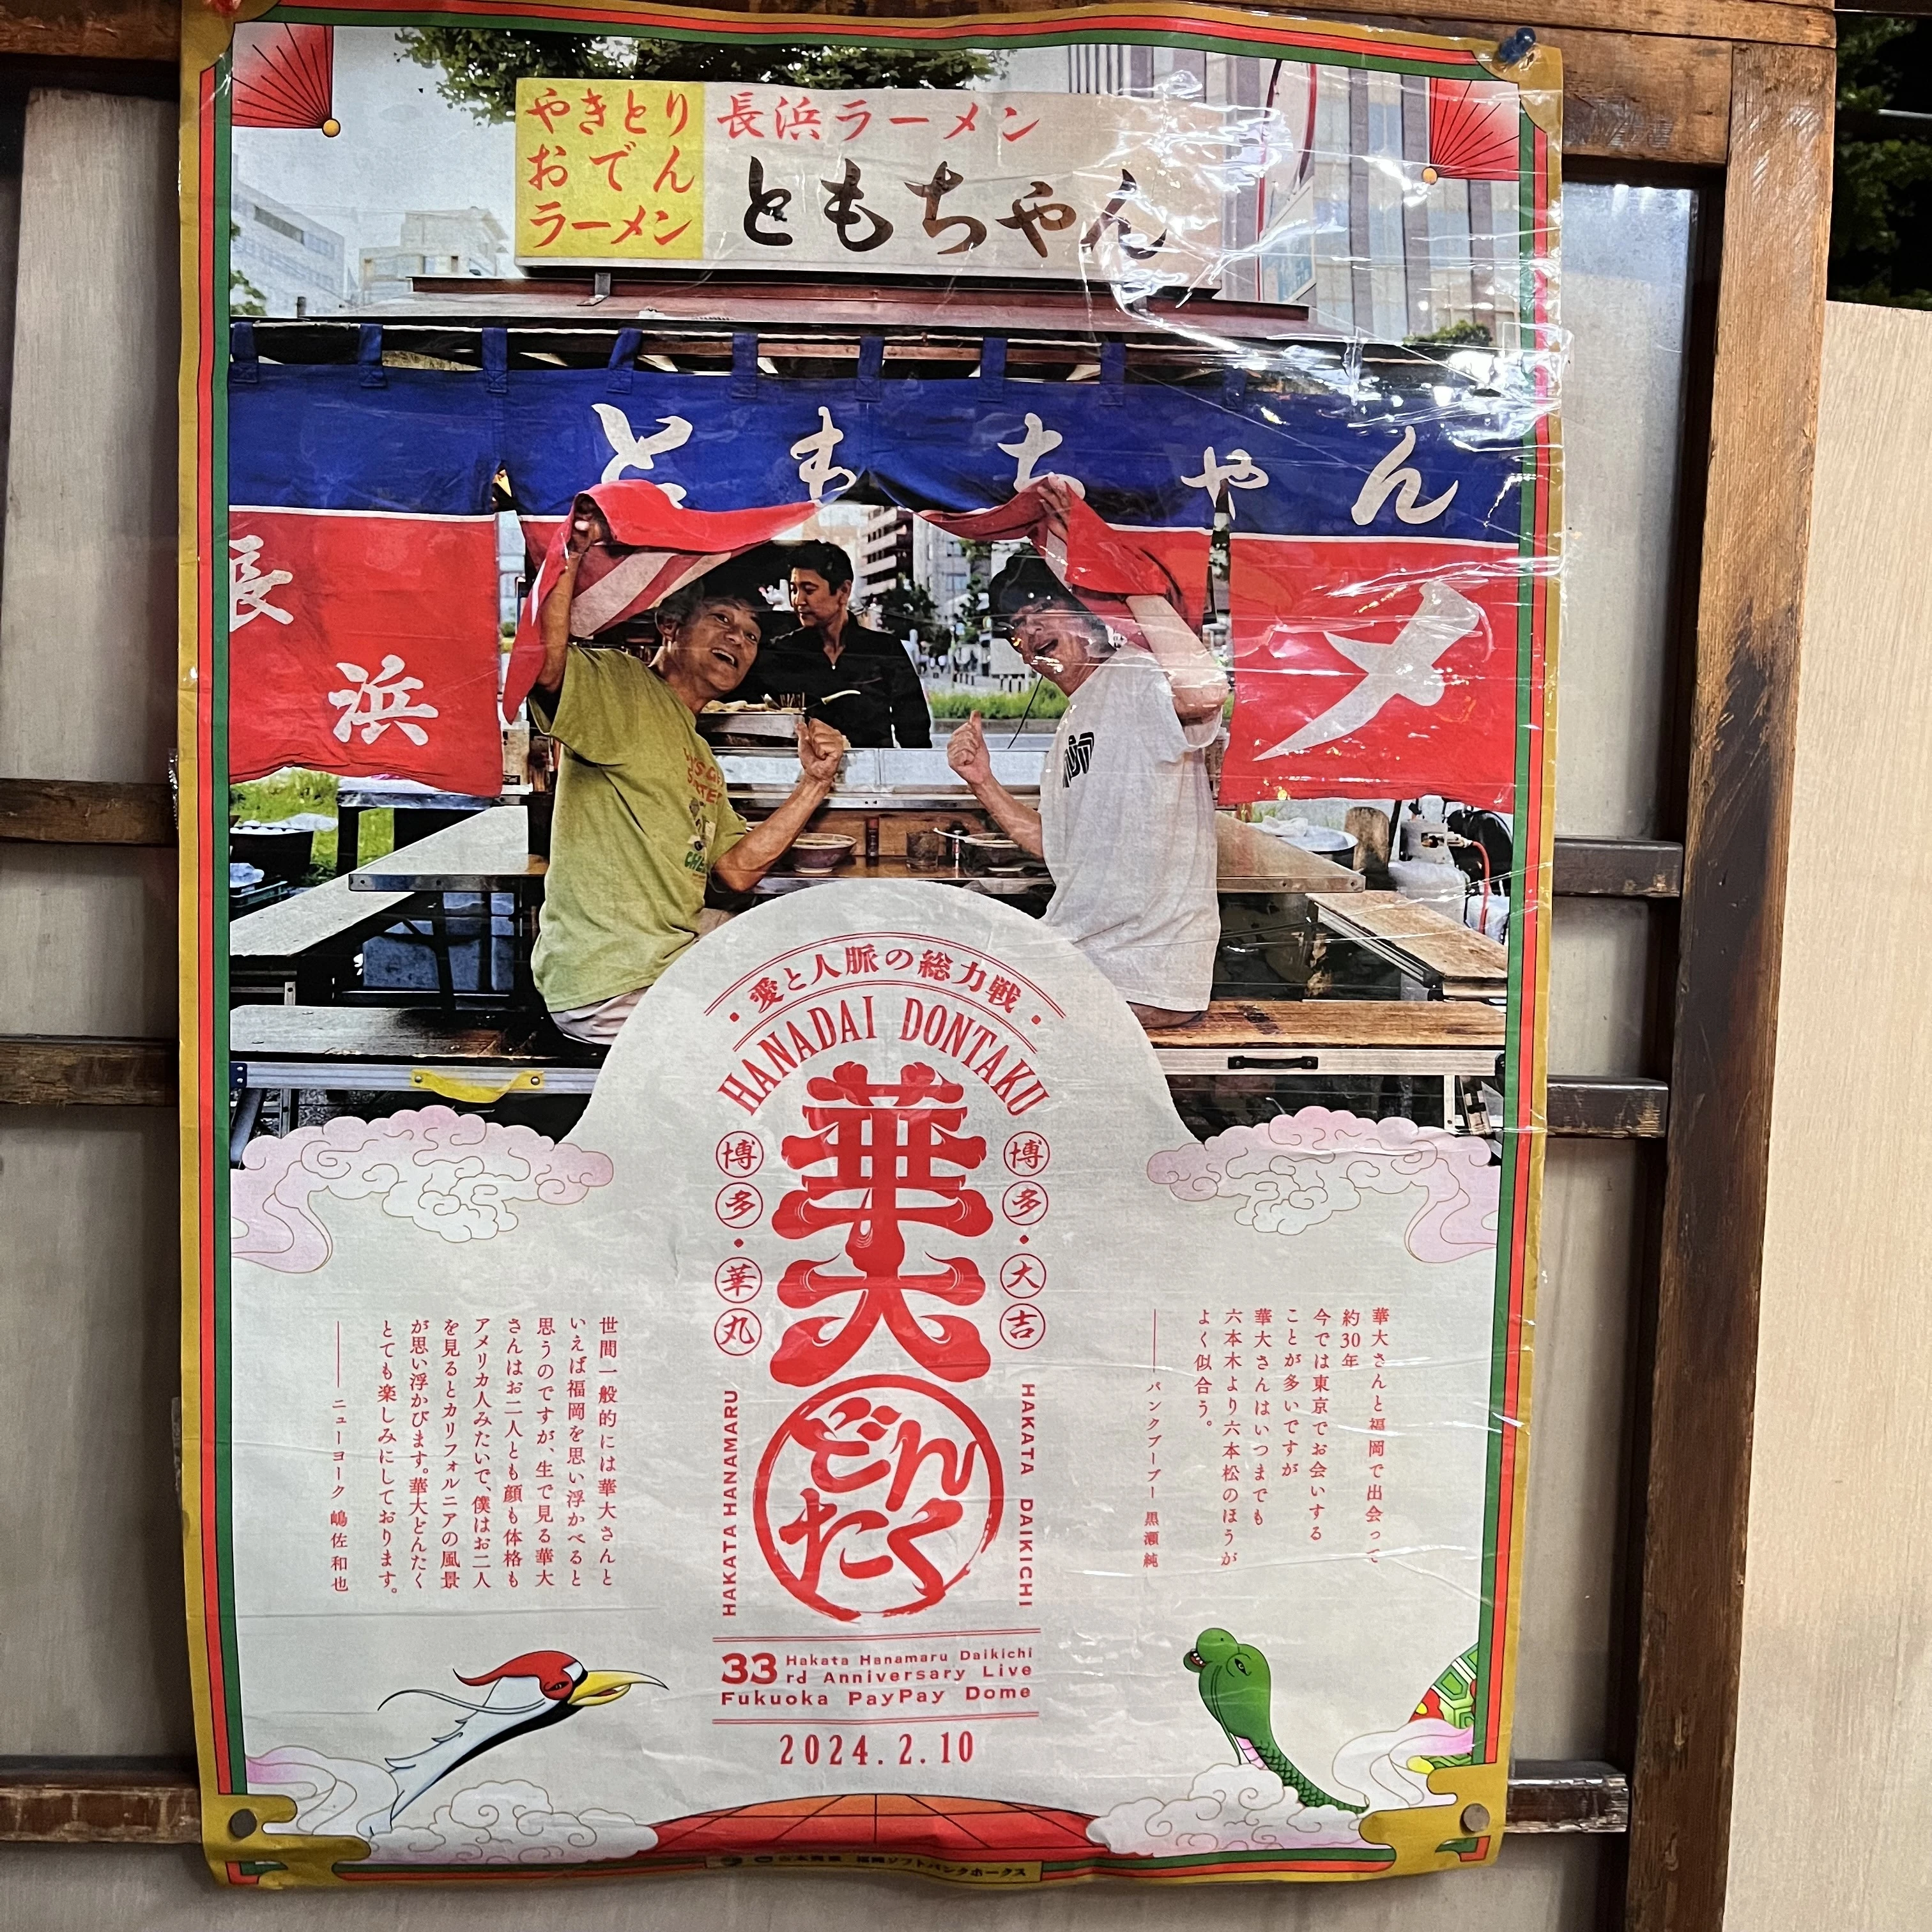 博多華丸・大吉さんの「愛と人脈」を表現したポスターが、福岡の街を中心に各所掲載されているようで、ともちゃんでも！?